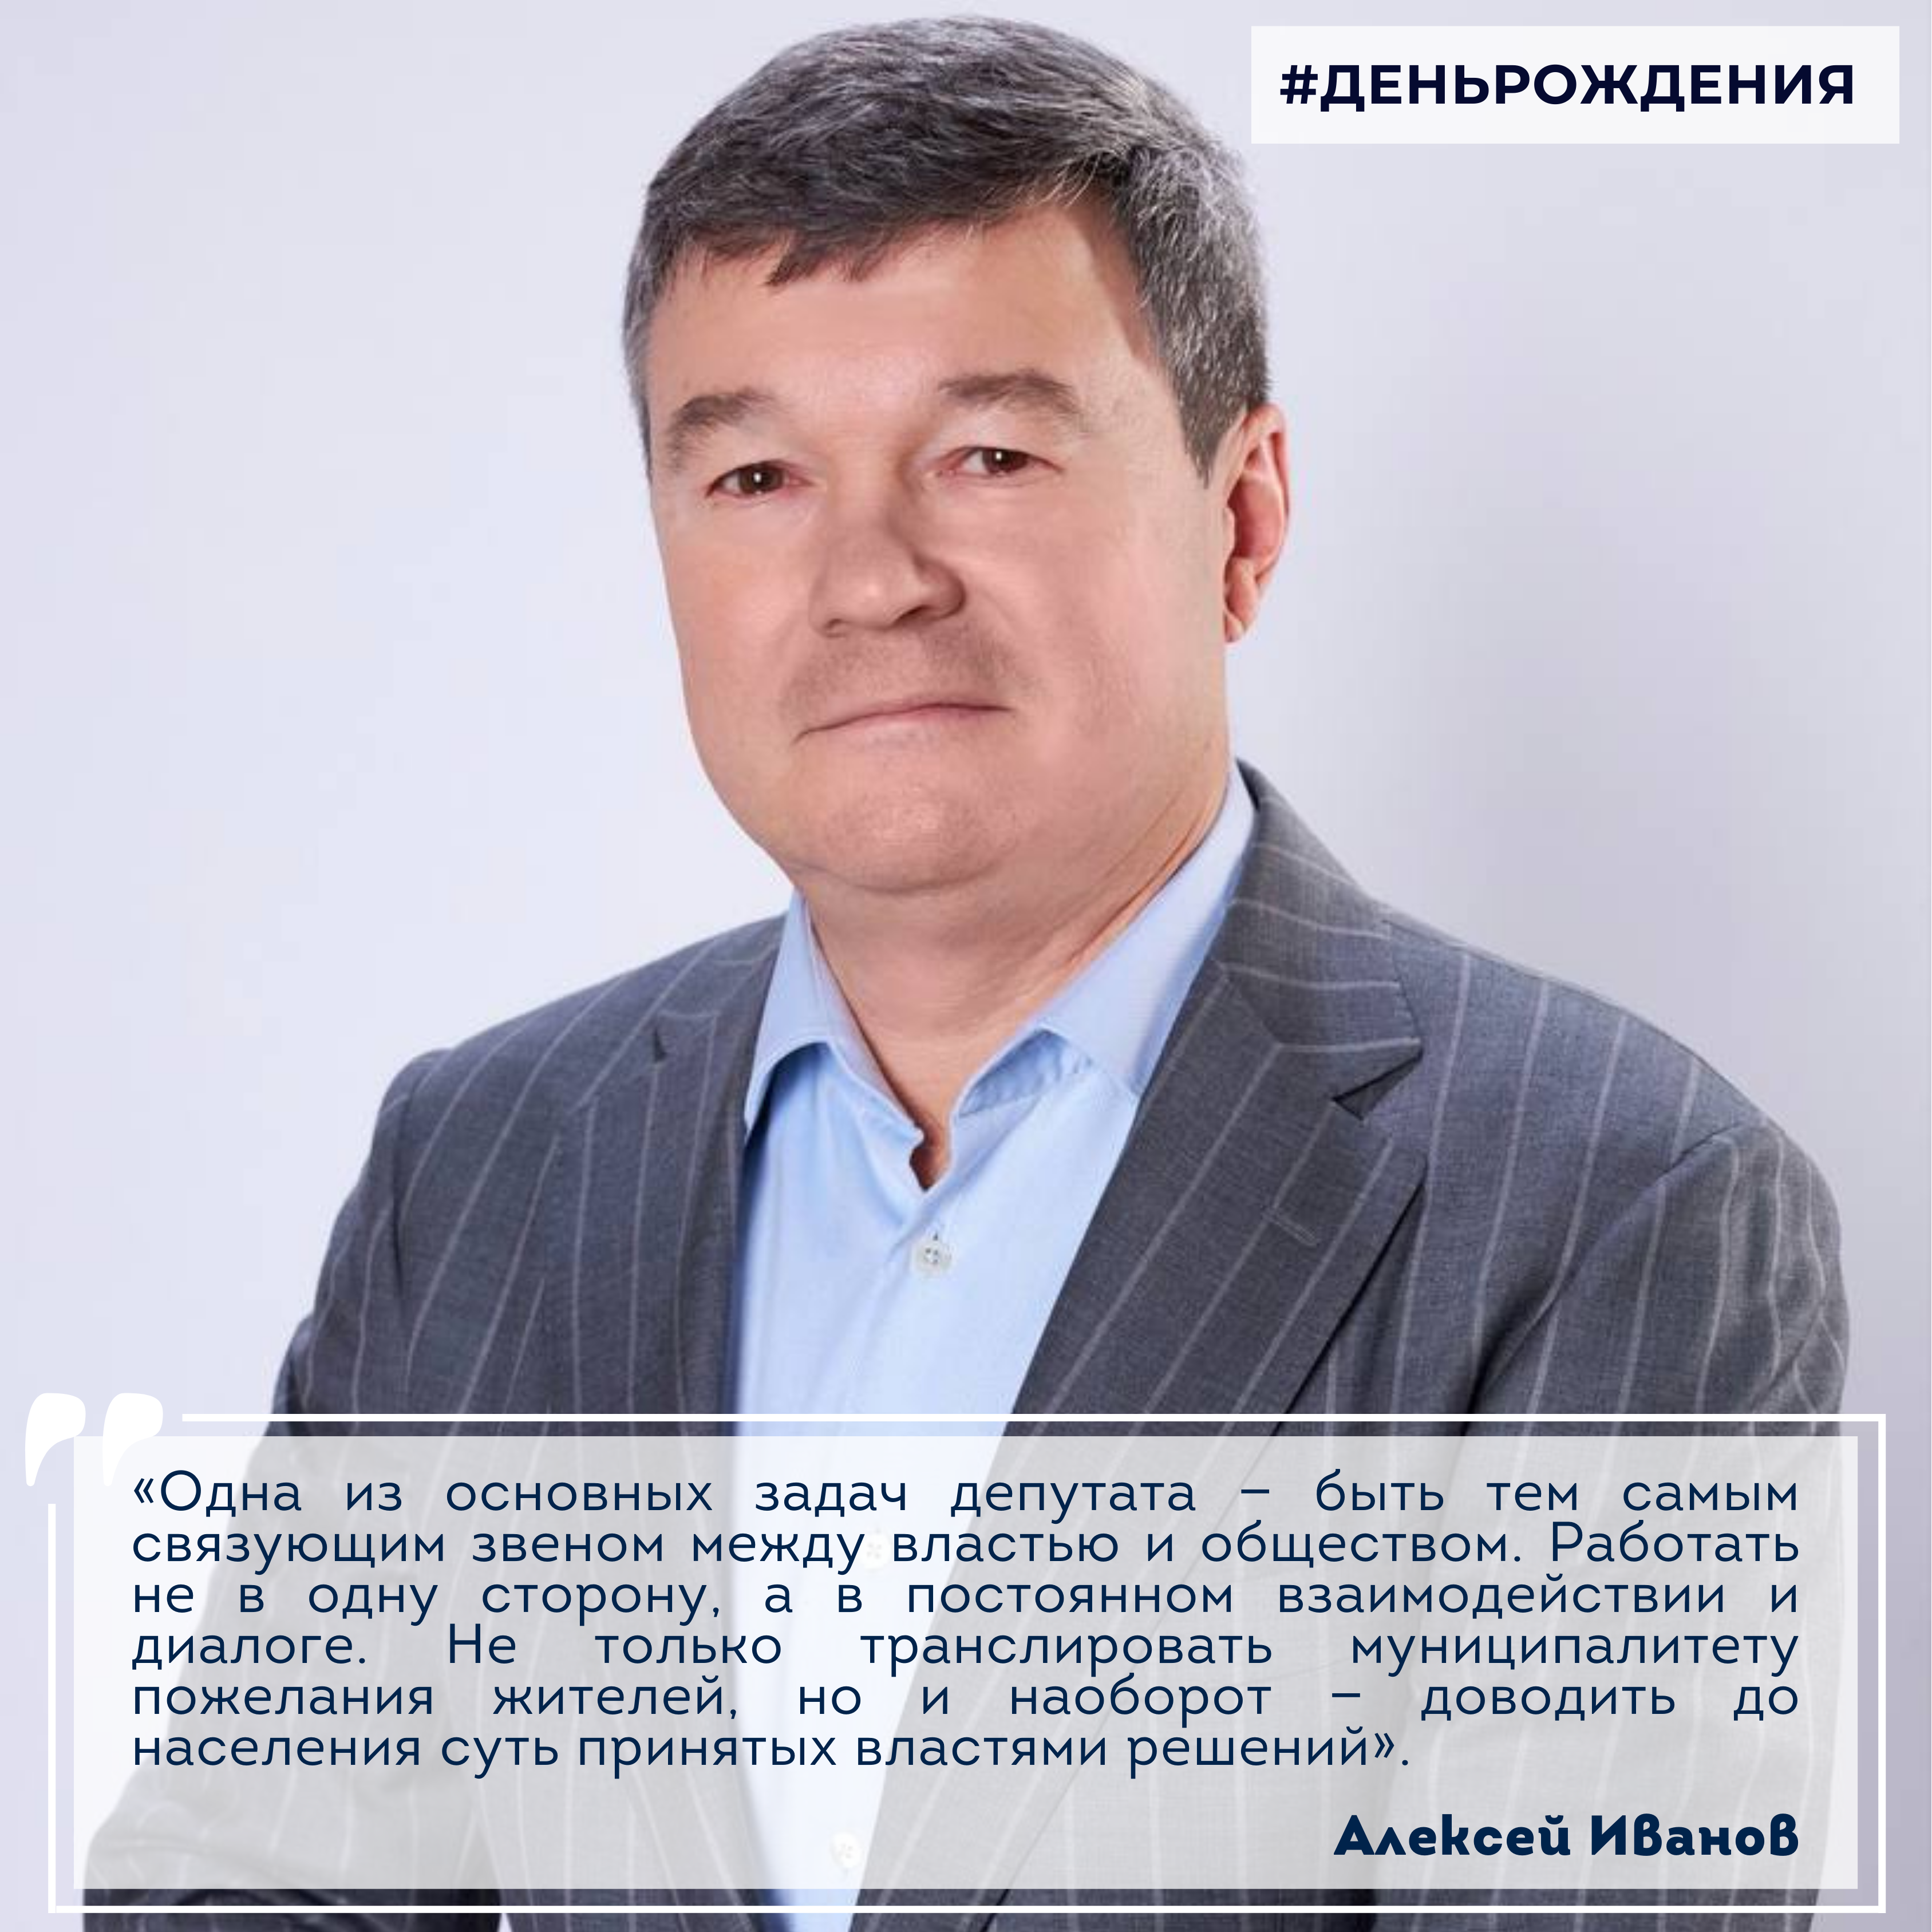 28 февраля празднует свой днём рождения депутат Совета депутатов Городского округа Коломна Алексей Иванов